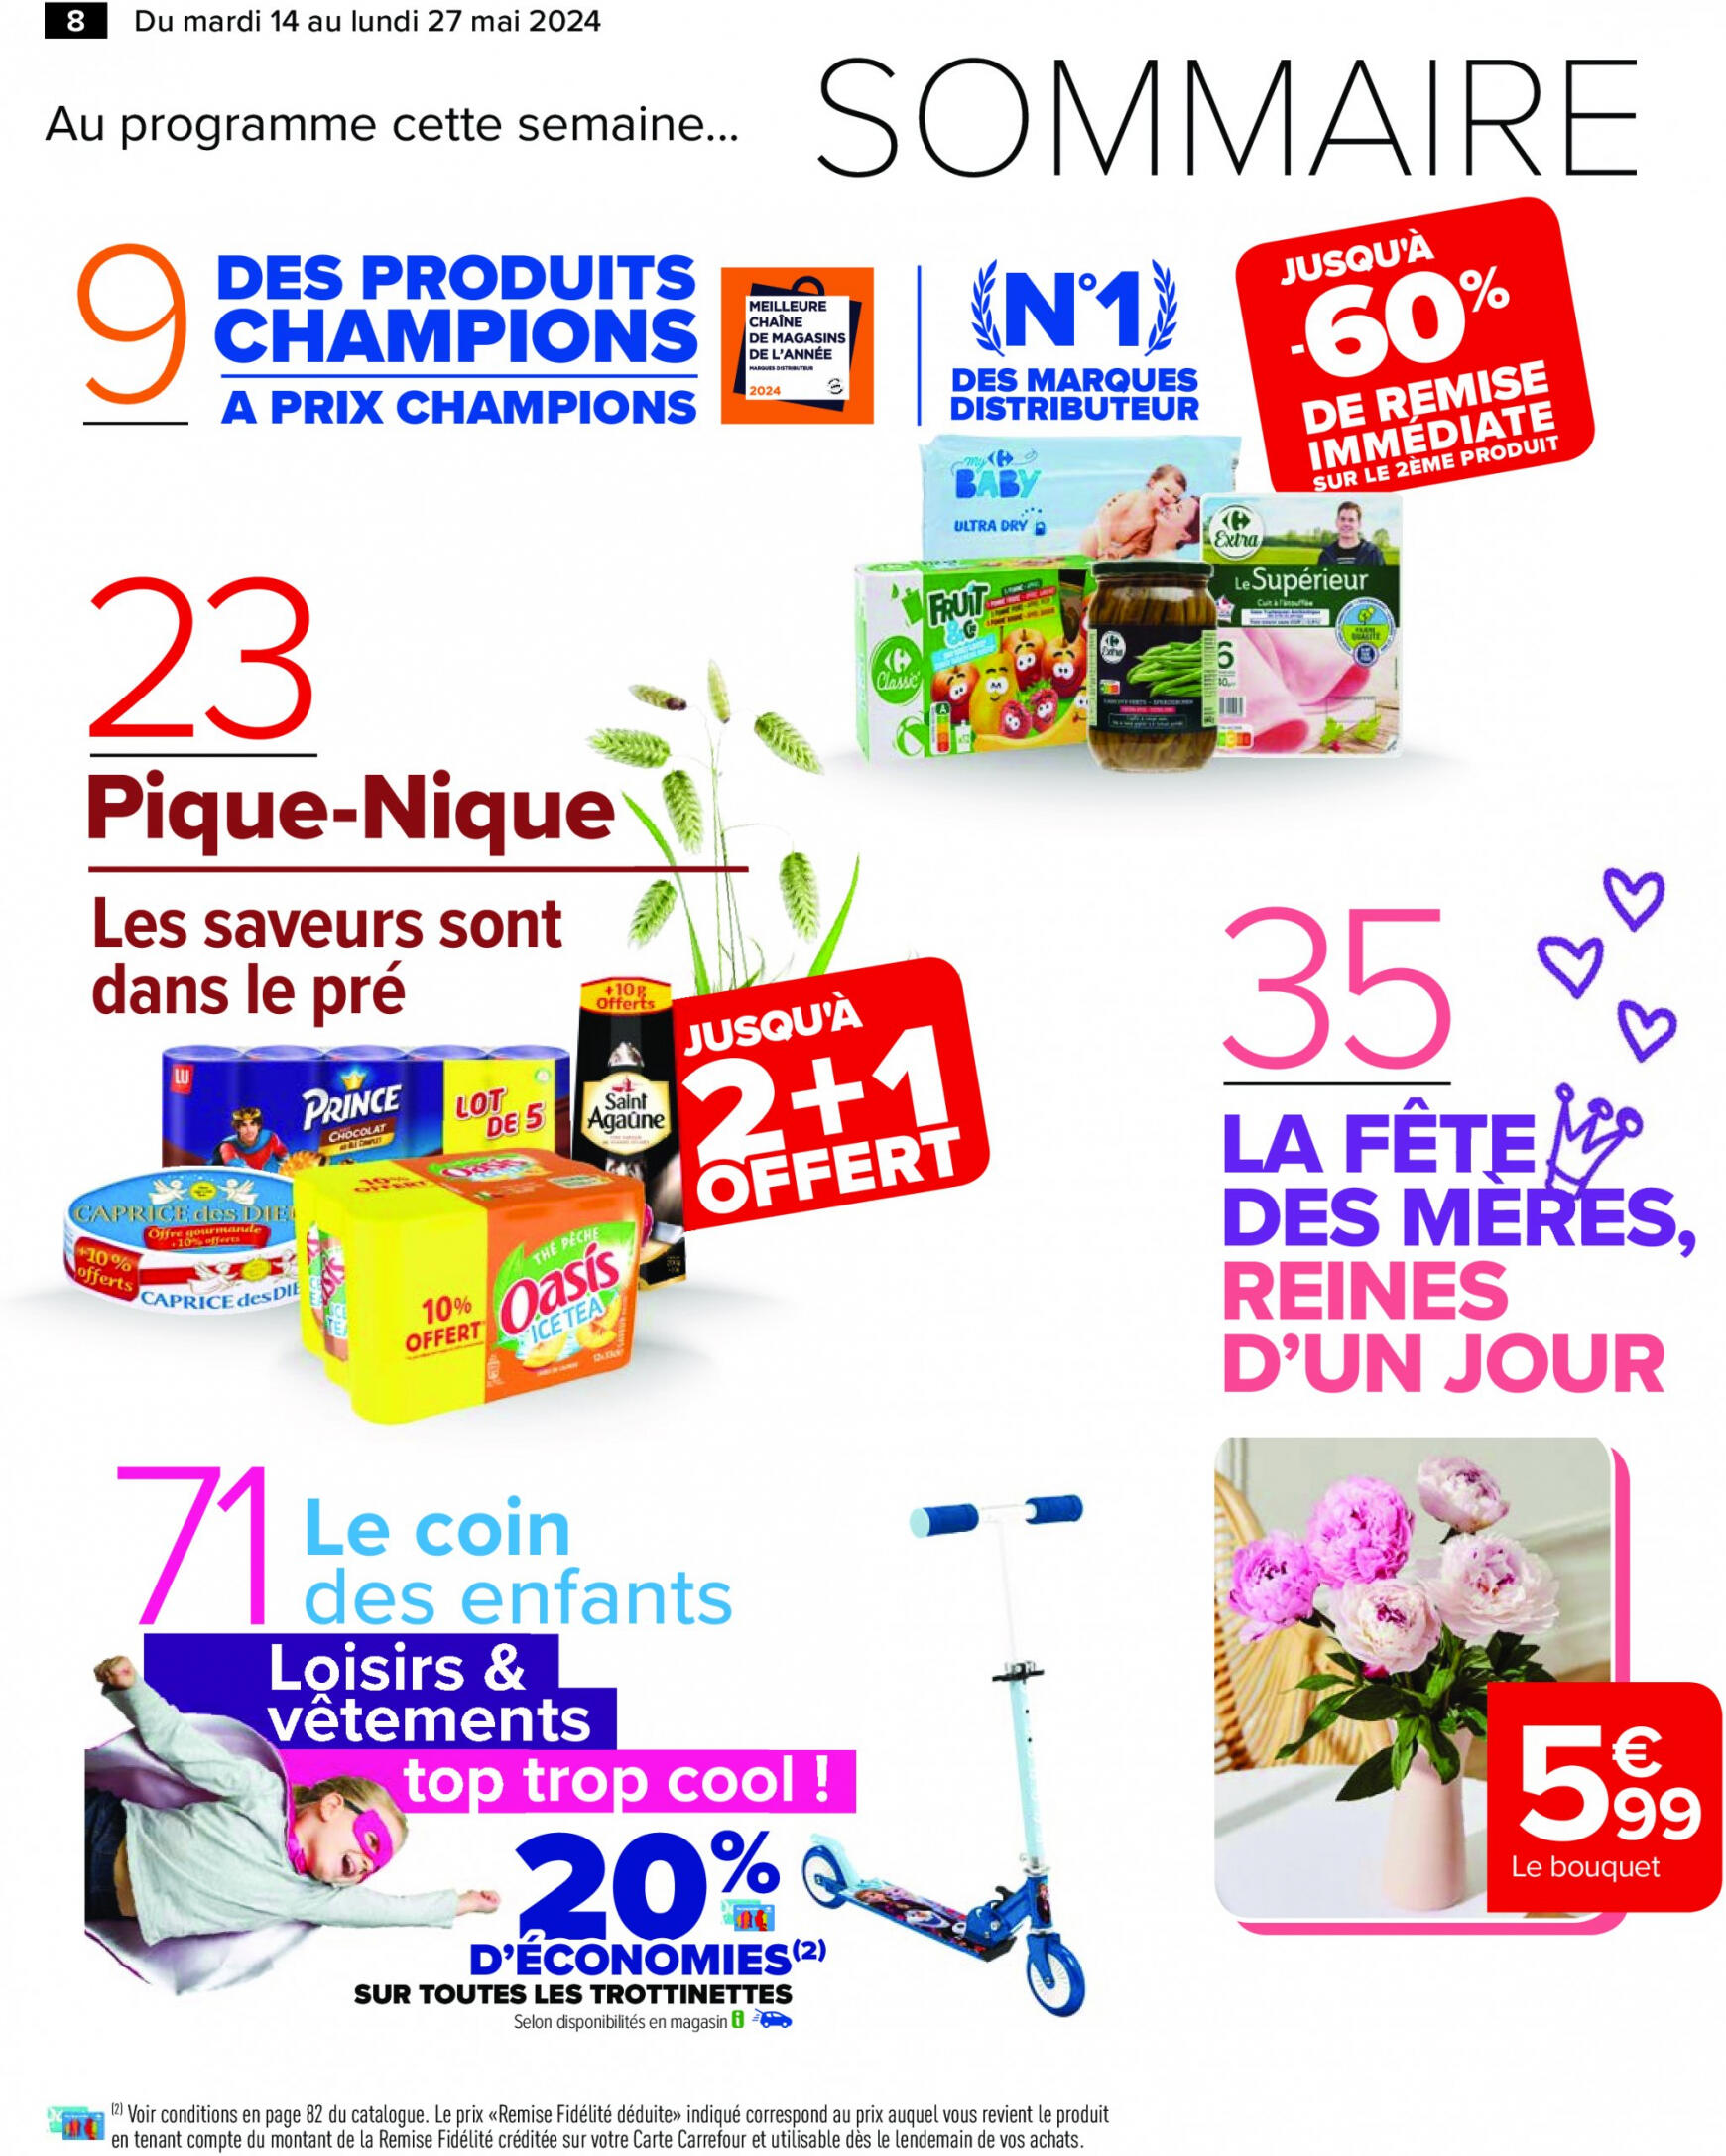 carrefour - Prospectus Carrefour actuel 14.05. - 27.05. - page: 10